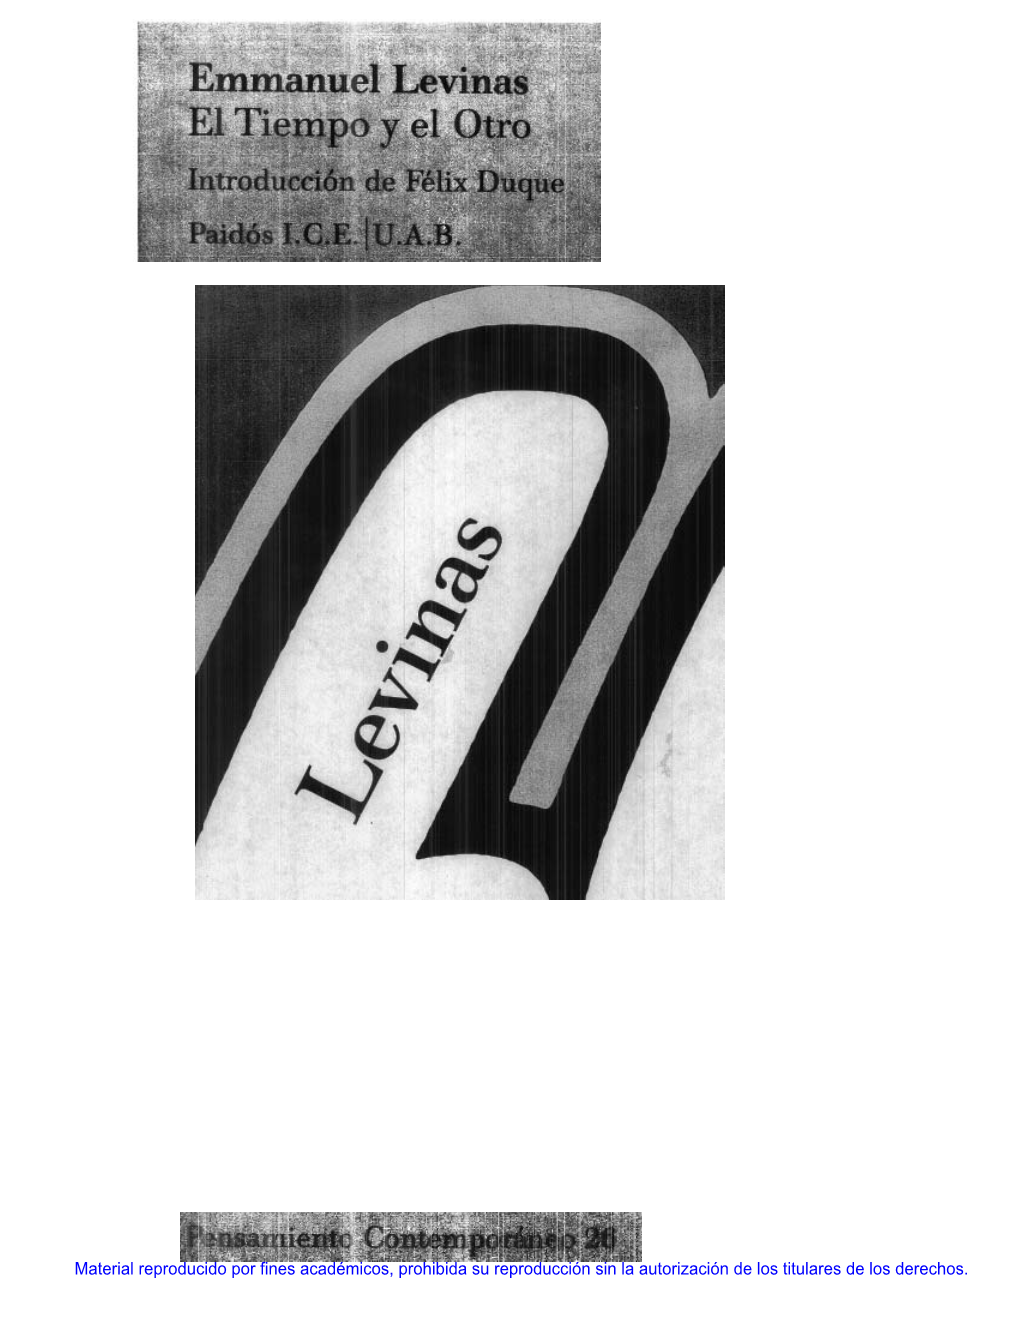 Emmanuel Lévinas, Une Bibliographie Primaire Et Se- Condaire (1929-1985), Lovaina, Peeters, 1986 (2.~’ Ed